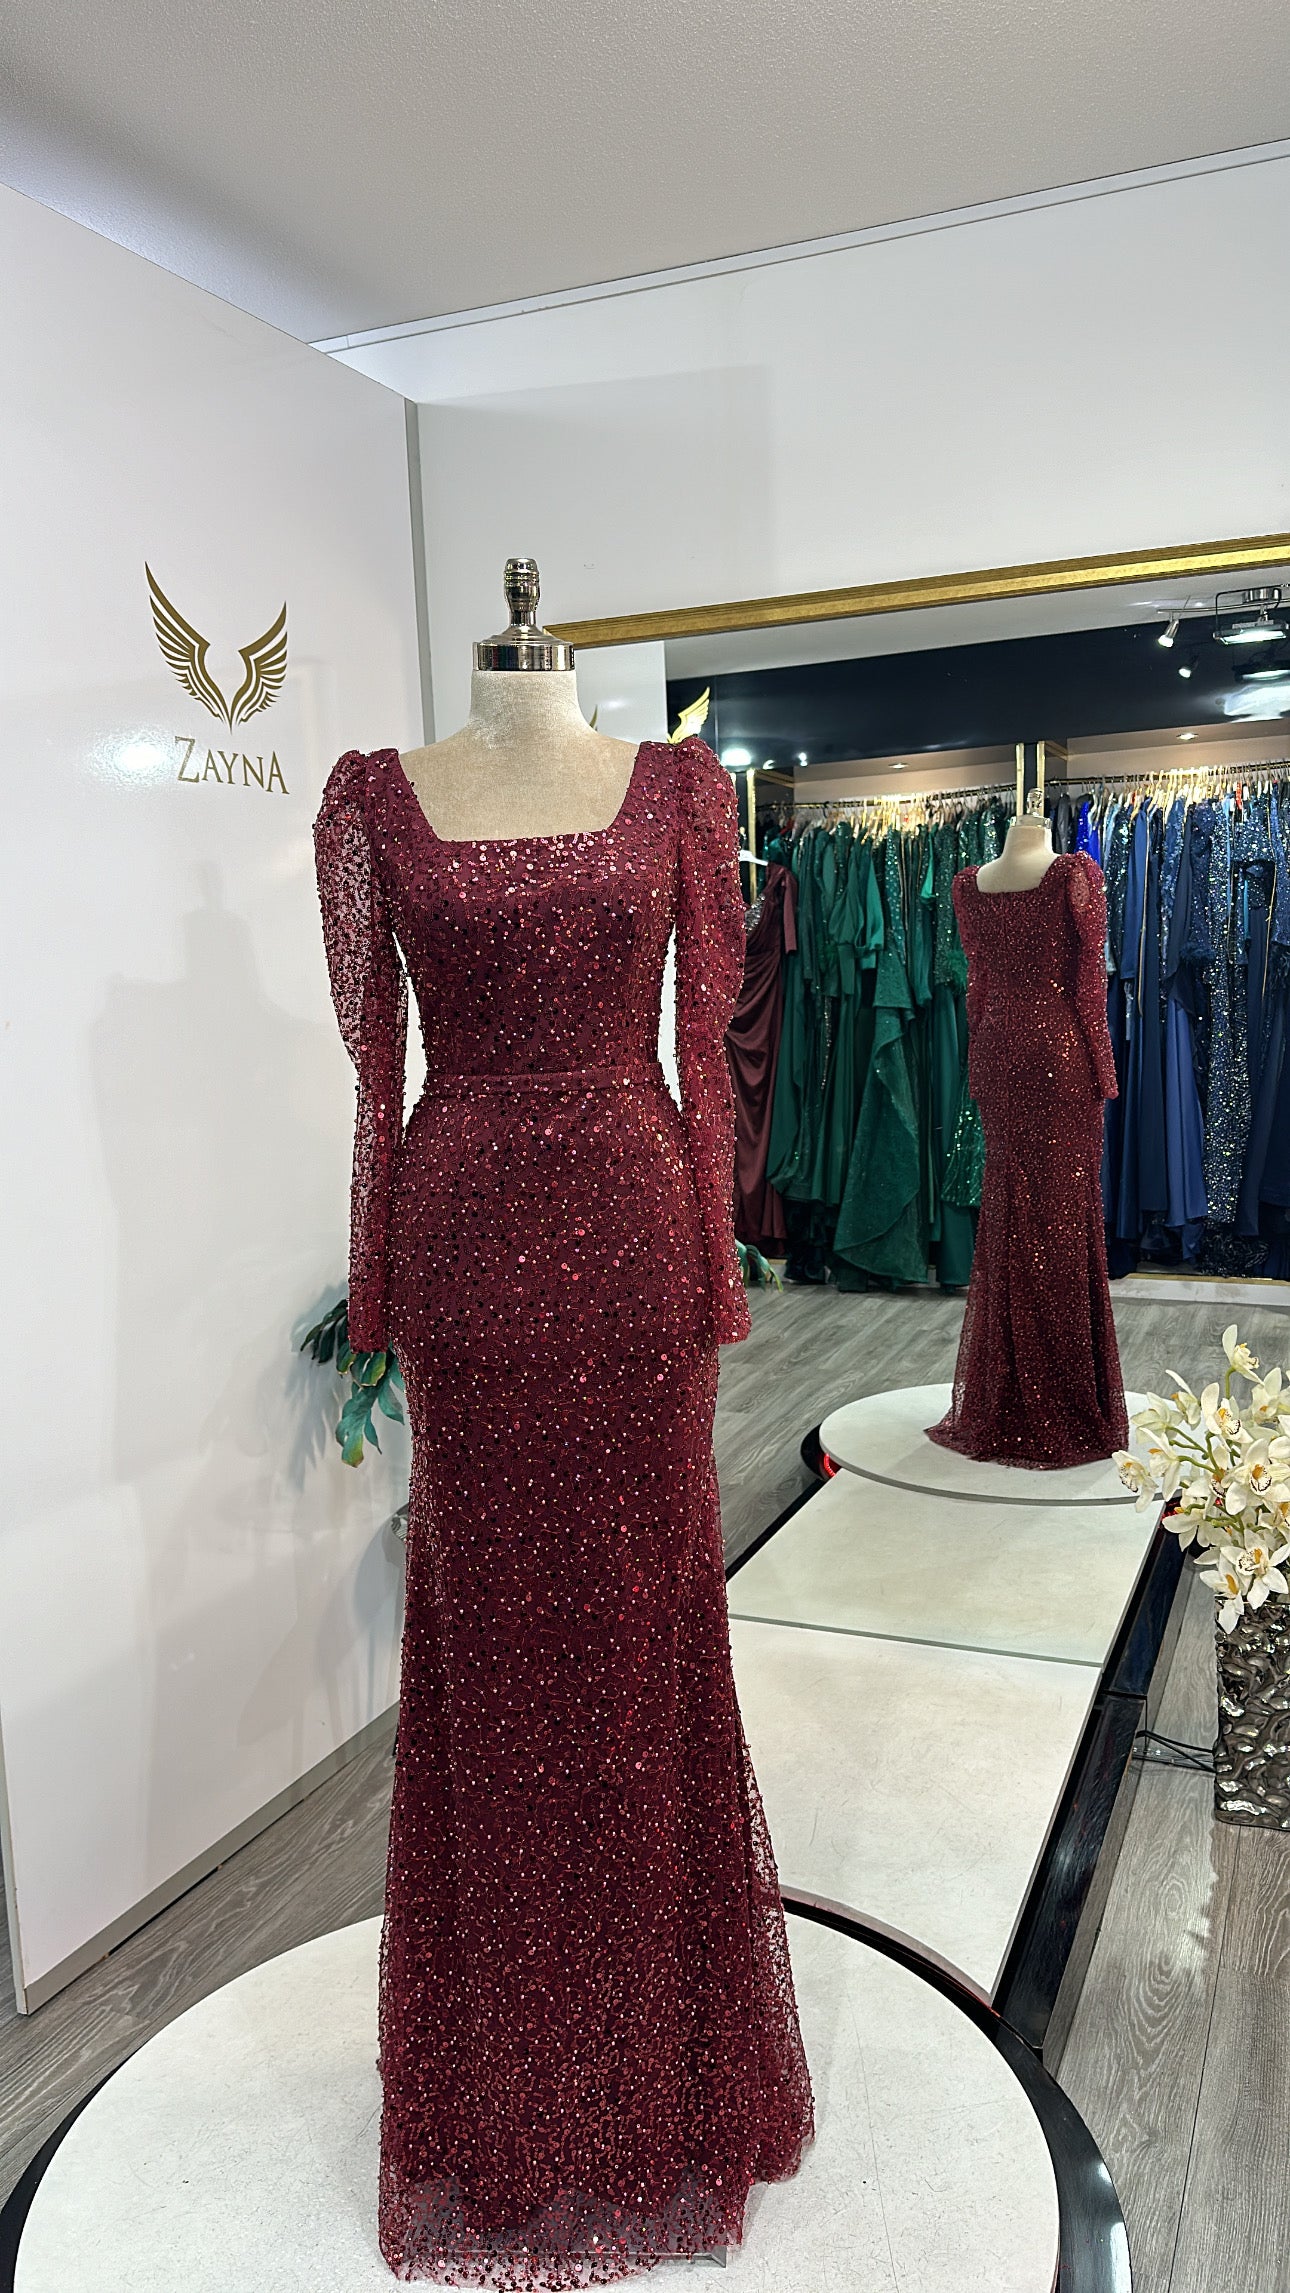 The Arzu dress